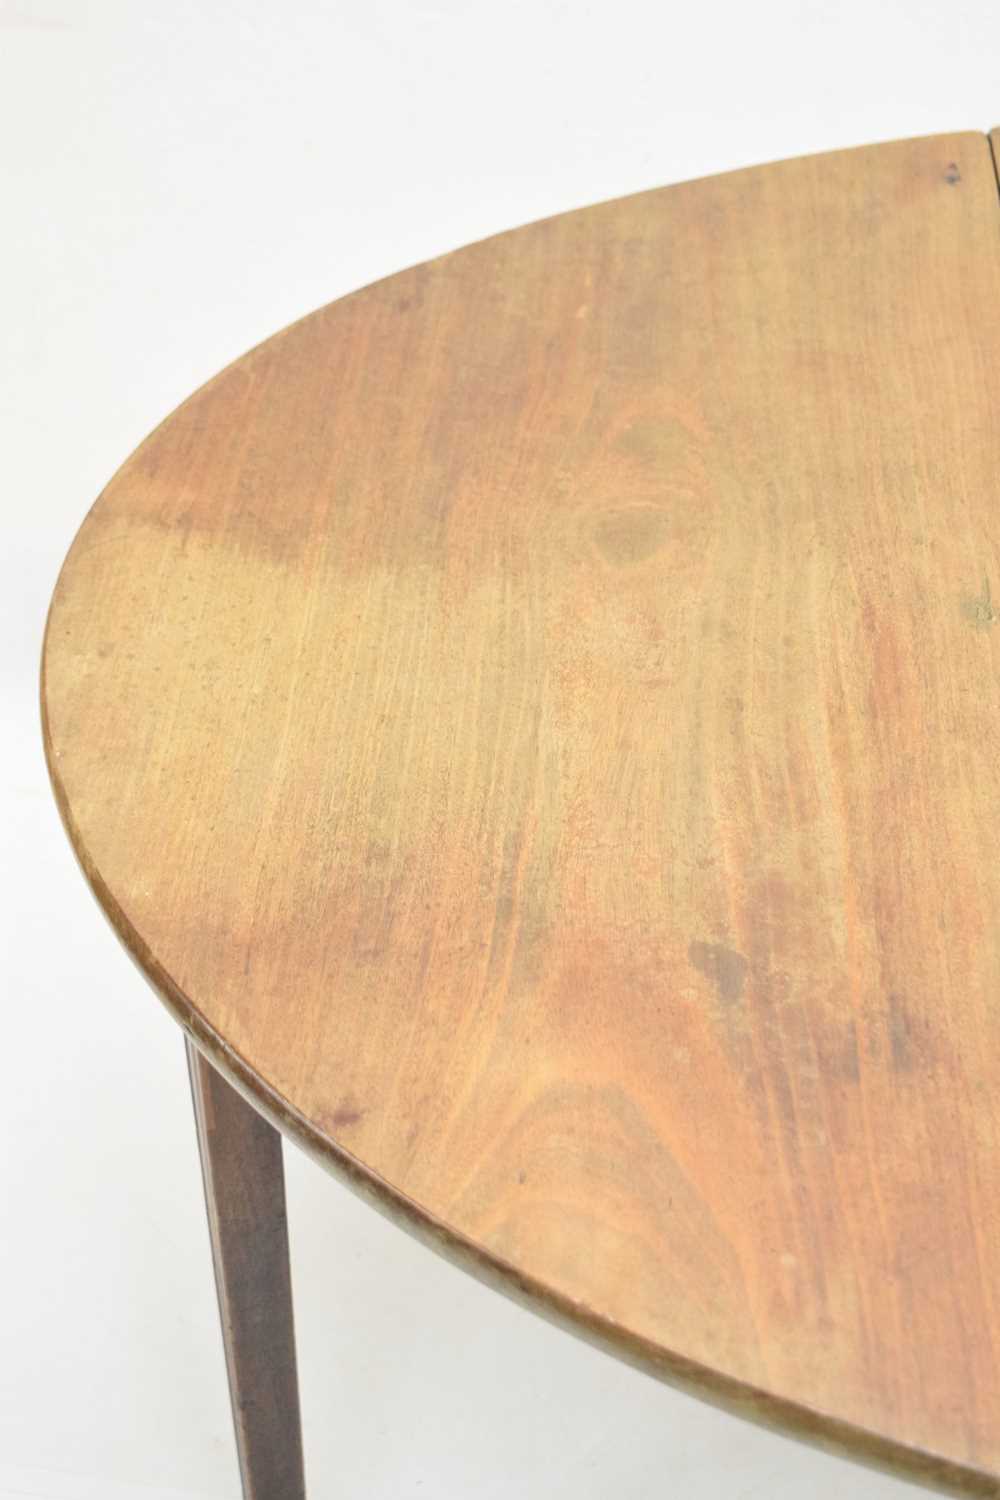 George III mahogany drop leaf table - Image 5 of 10